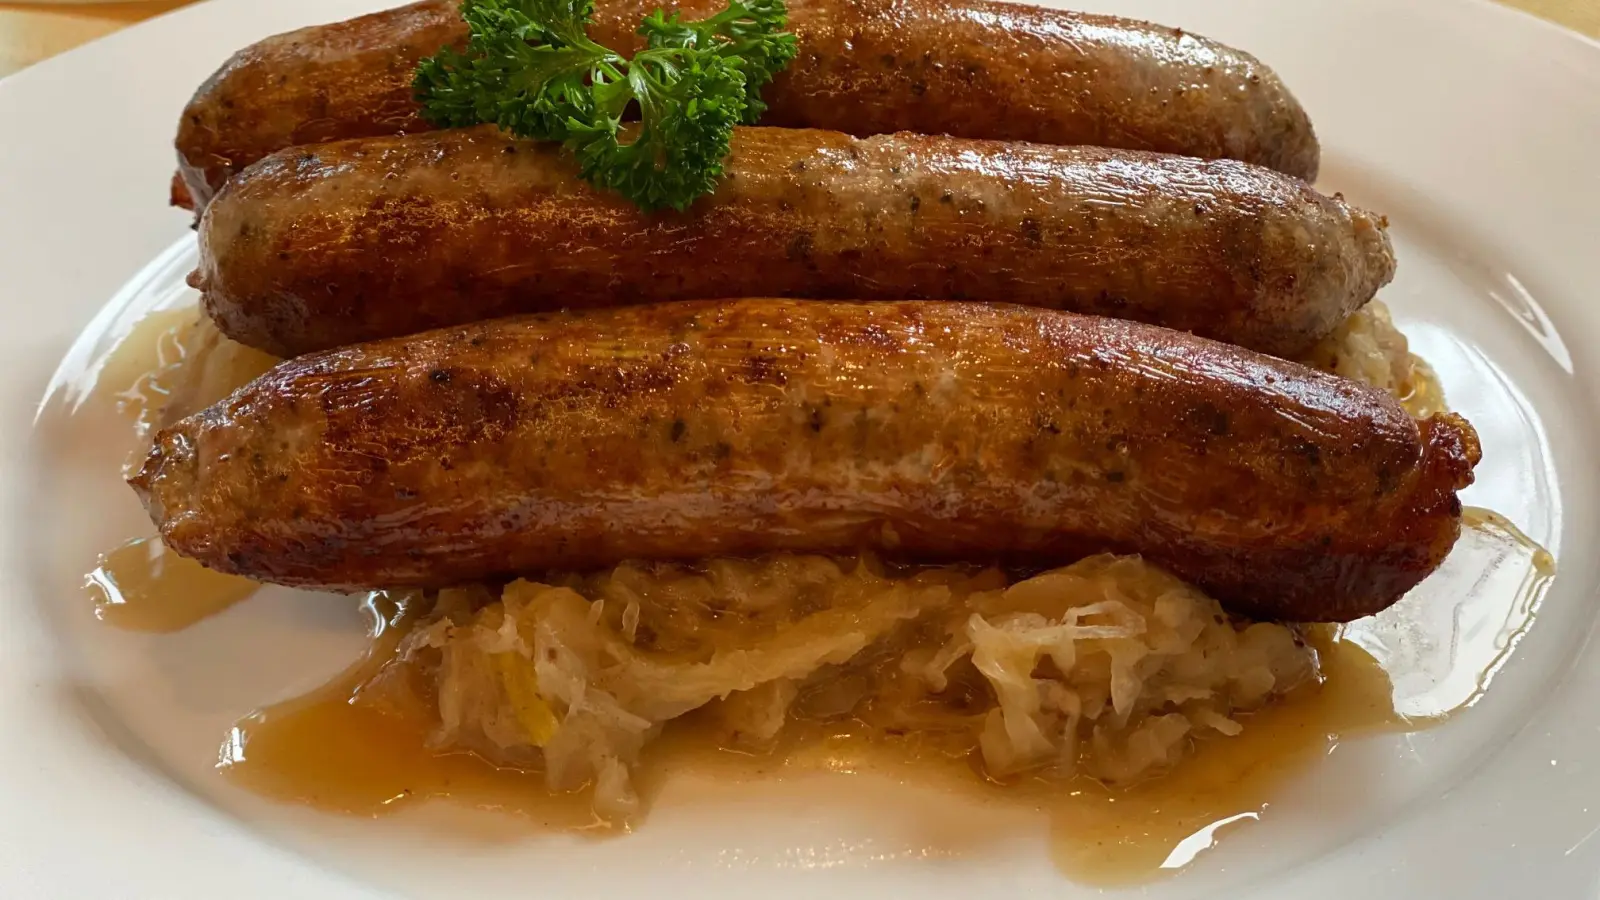 So mag der Mittelfranke sein Sauerkraut am liebsten: mit leckeren Bratwürsten. Am Sonntag feiert Heglau Krautfest. (Foto: Manfred Blendinger)